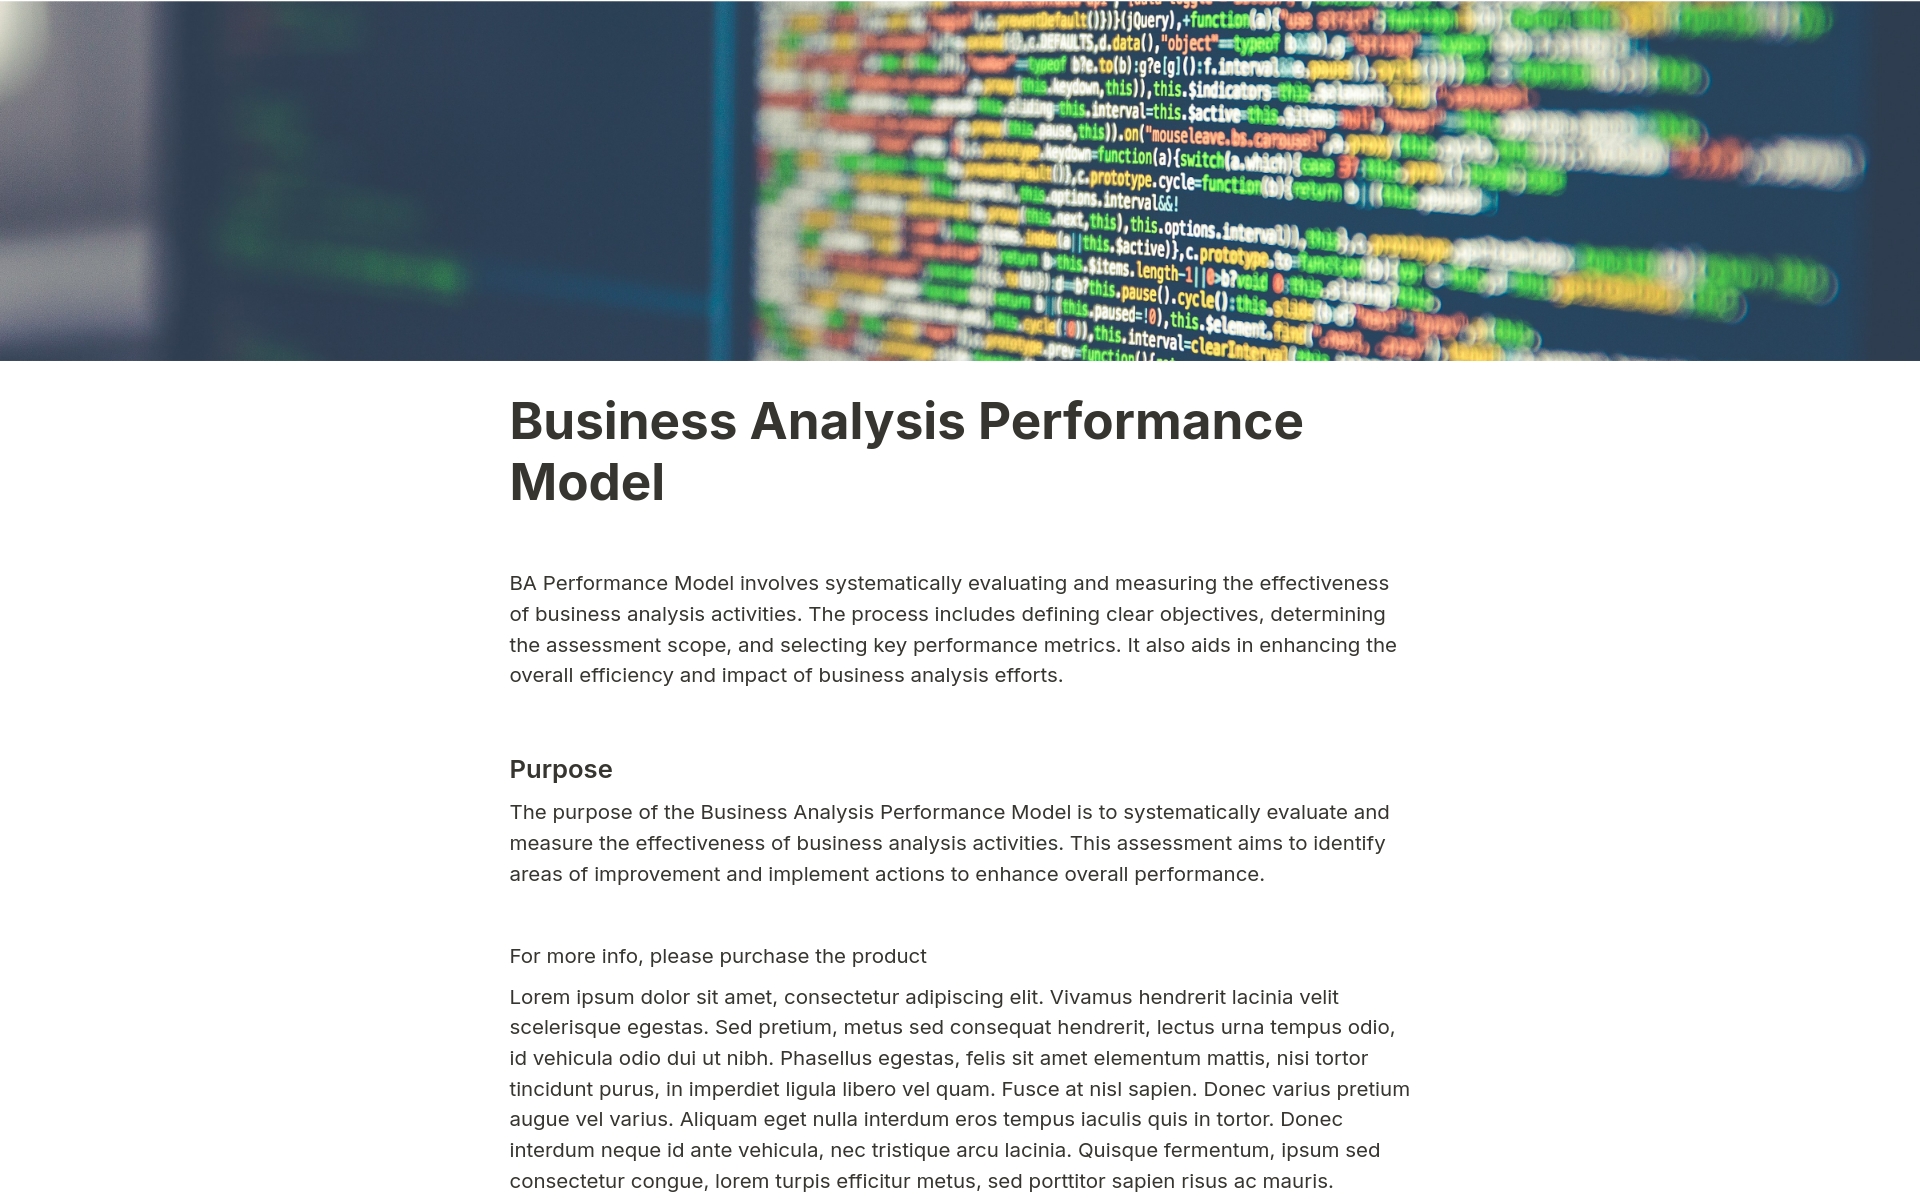 Uma prévia do modelo para Business Analysis Performance Model